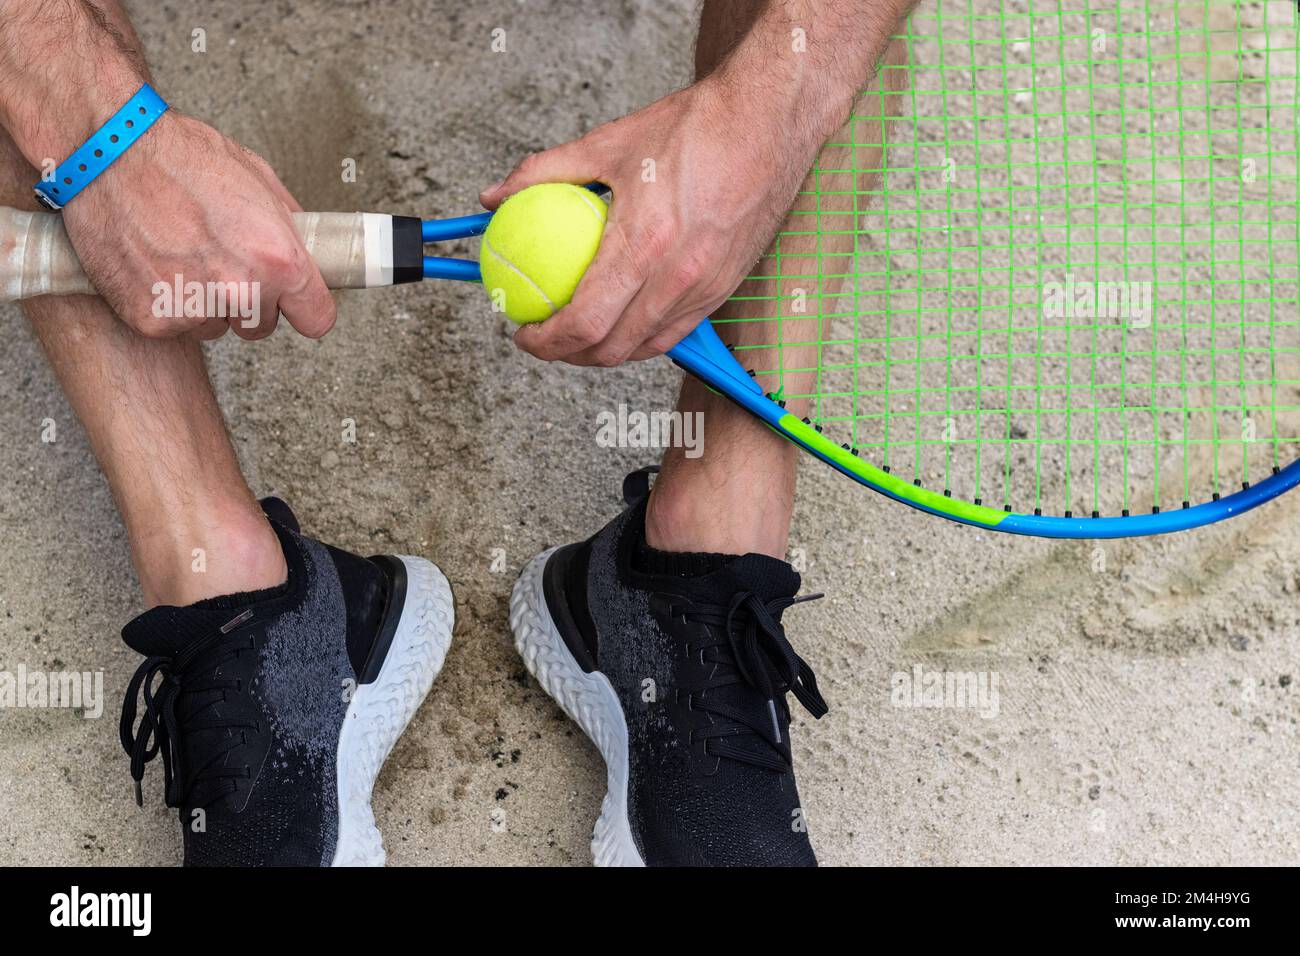 Racchetta da tennis e palla da tennis in mano all'uomo. Foto Stock